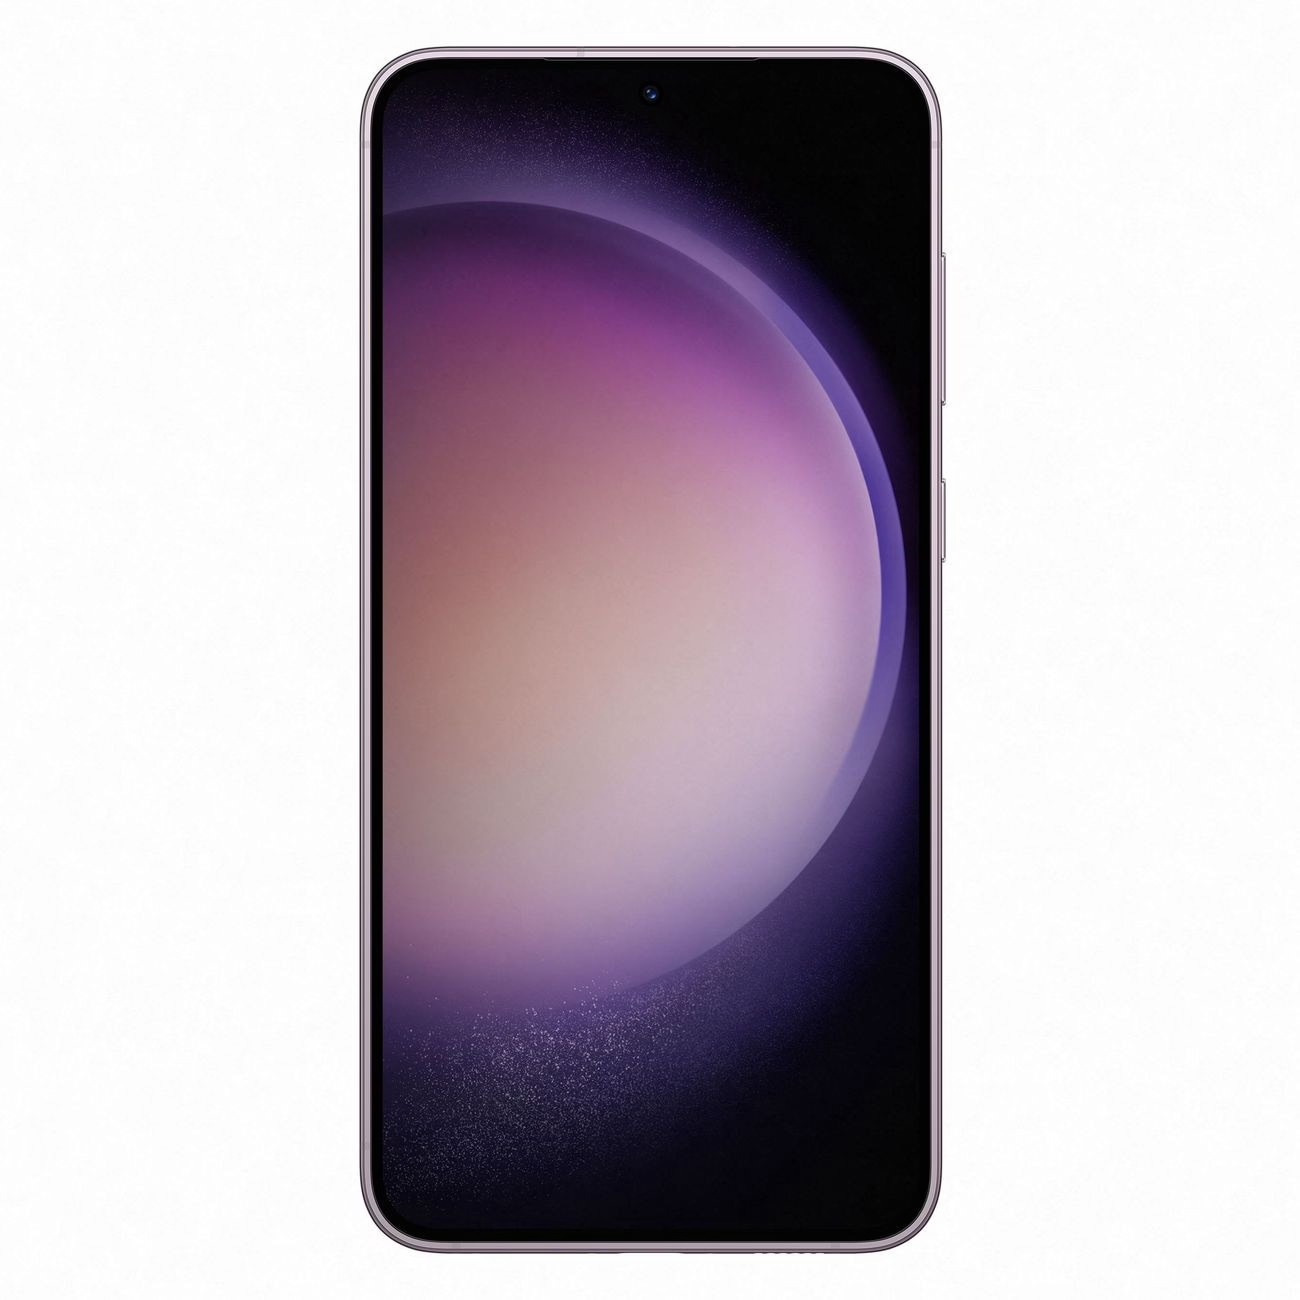 Купить смартфон samsung galaxy s23+ 8/256gb lavender S-Серия в официальном магазине Apple, Samsung, Xiaomi. iPixel.ru Купить, заказ, кредит, рассрочка, отзывы,  характеристики, цена,  фотографии, в подарок.